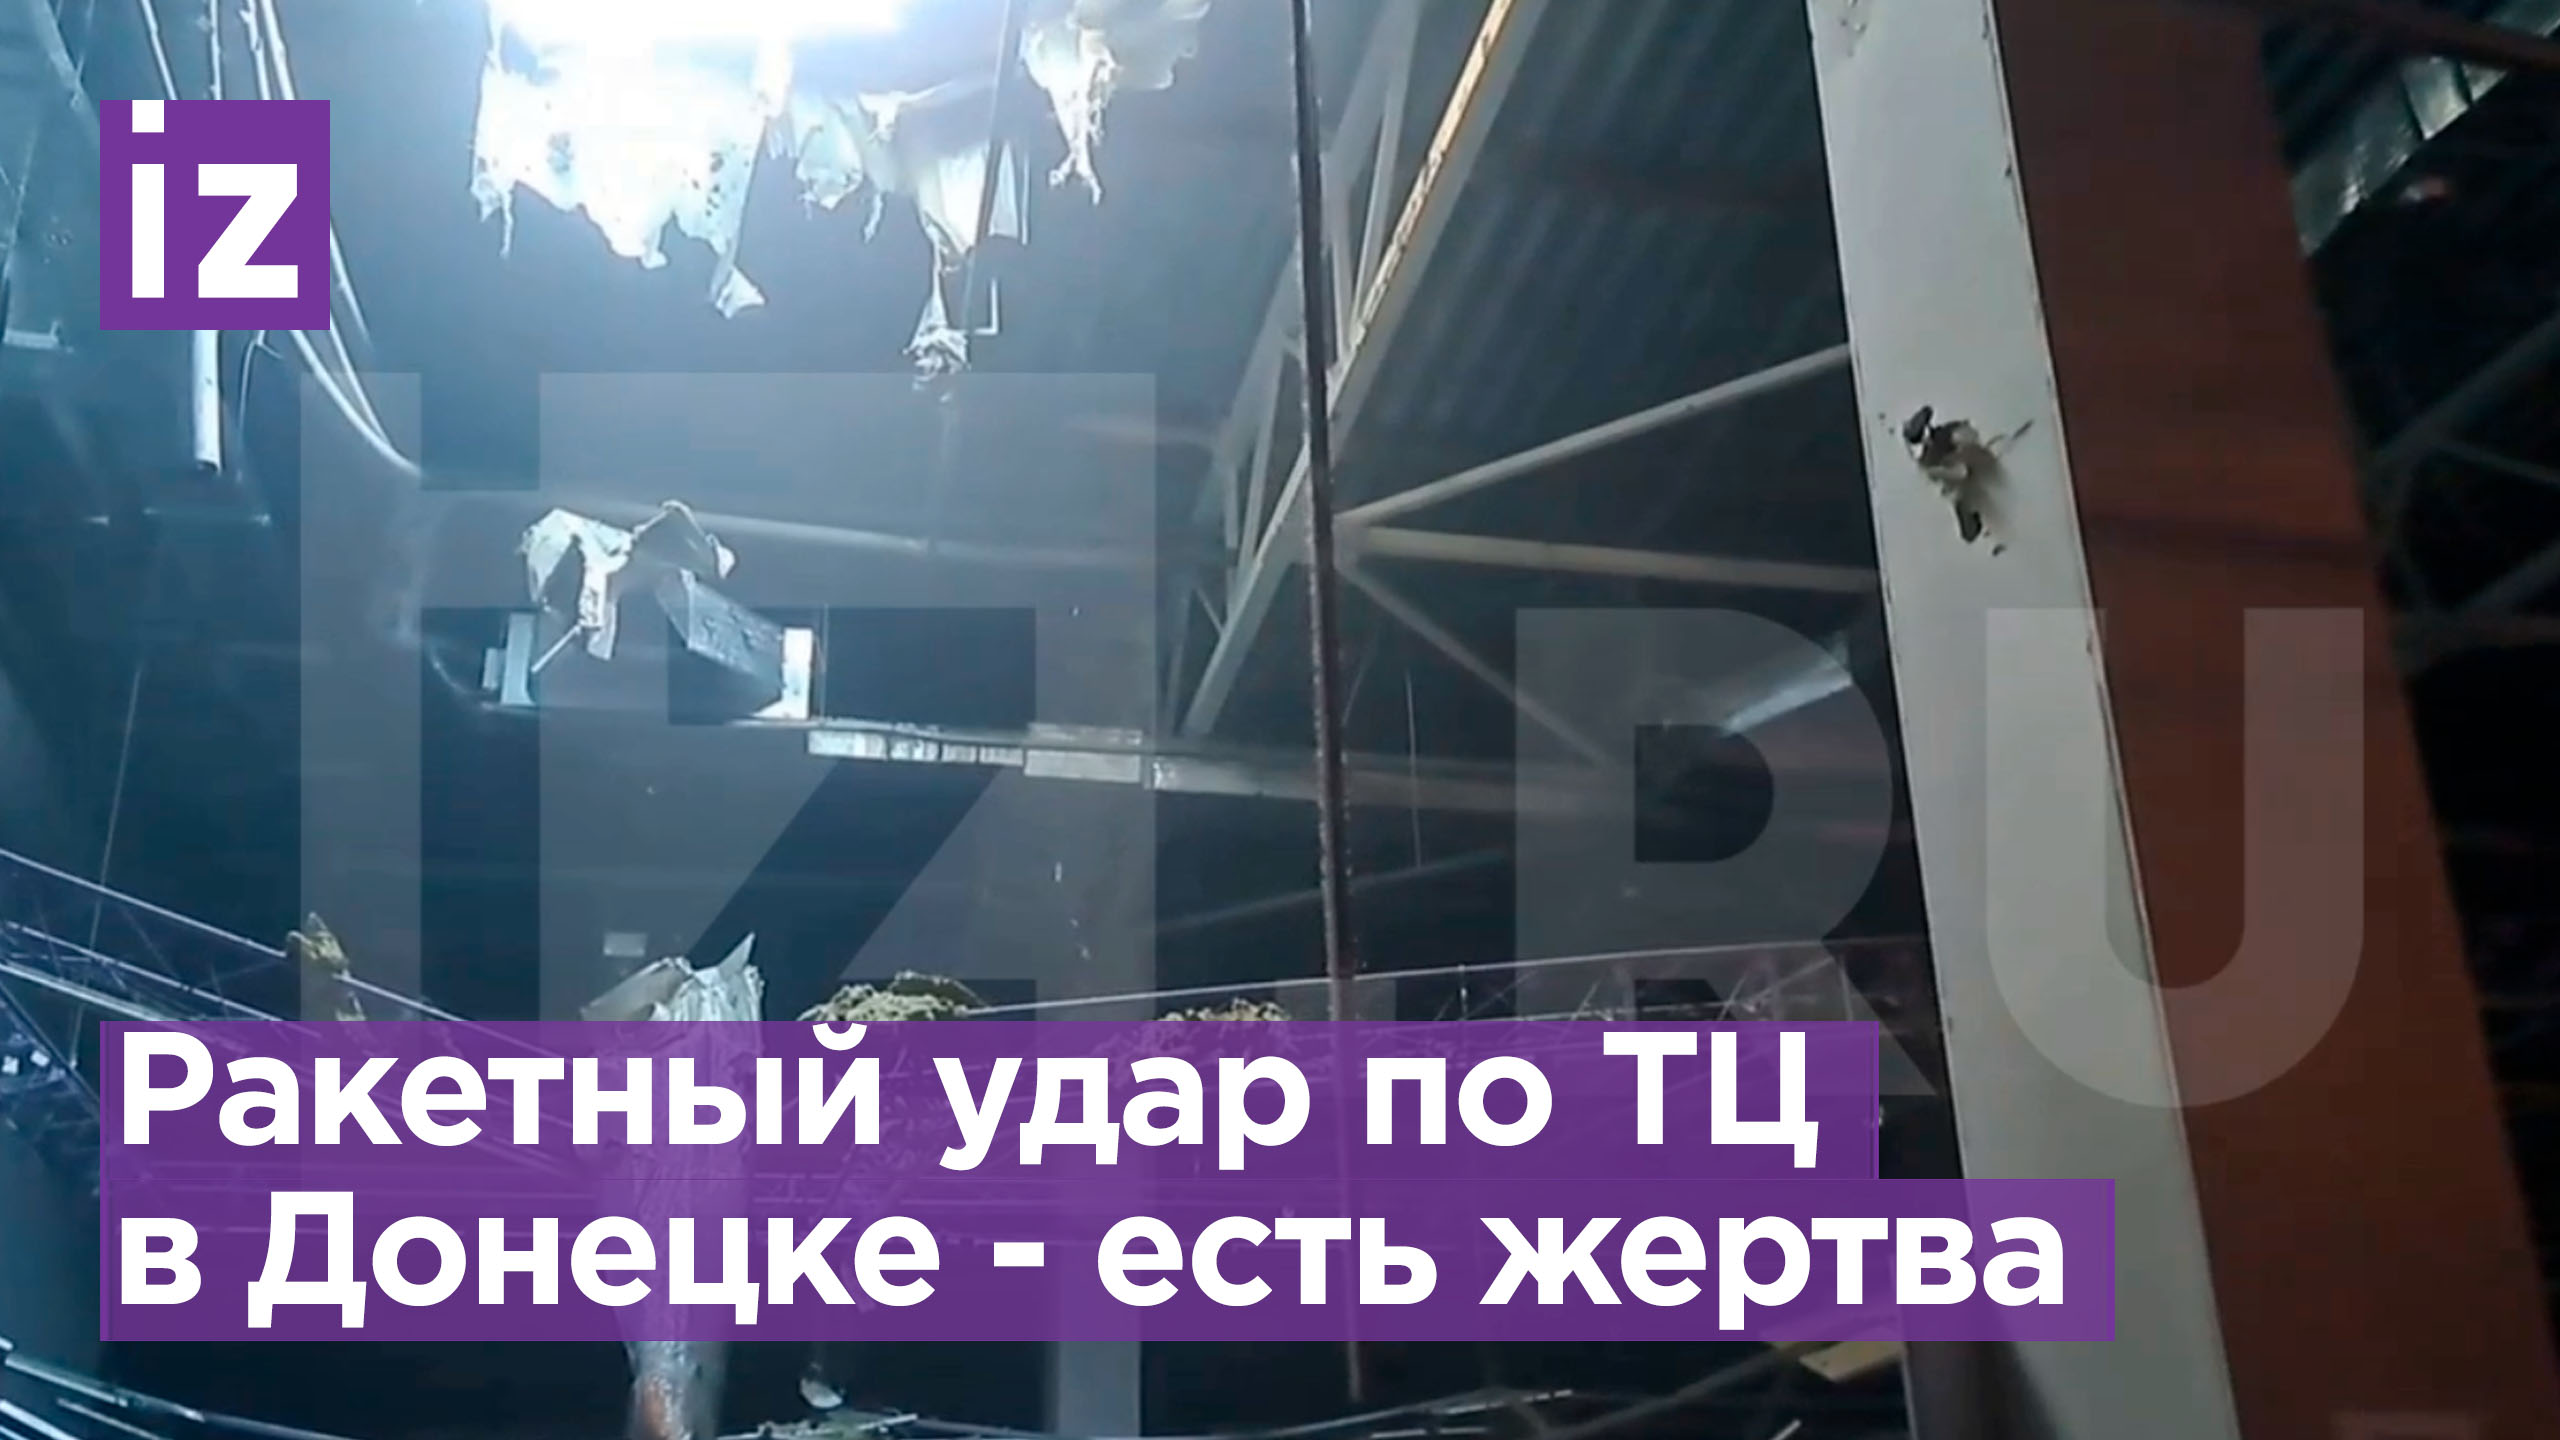 Украинская ракета пробила крышу торгового центра в Донецке. Погибла женщина / Известия